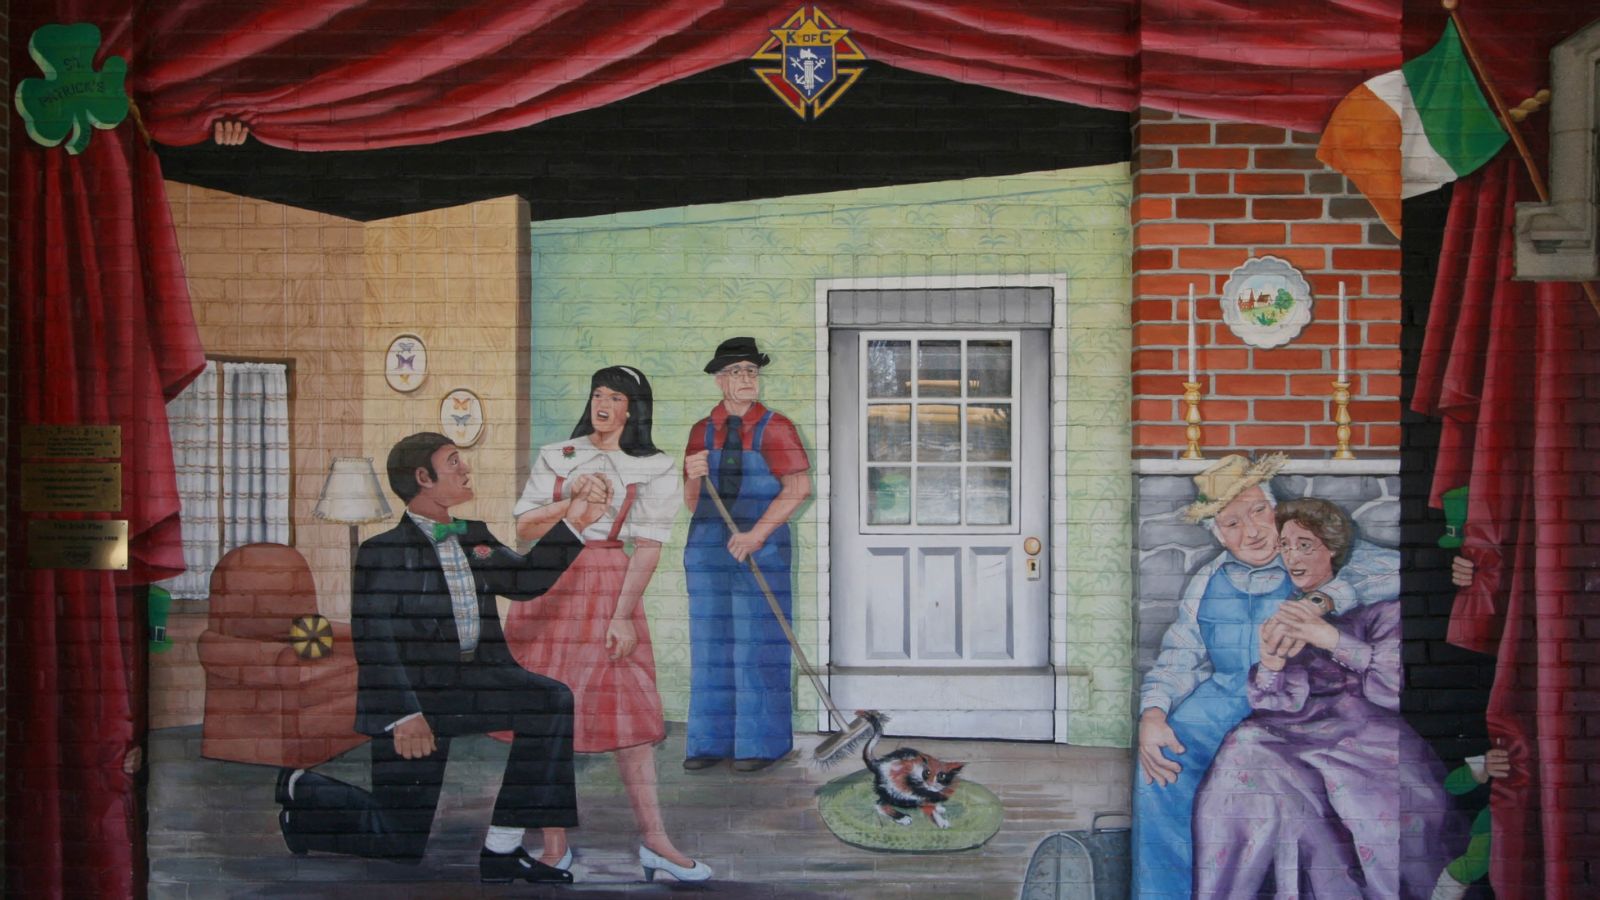 Photo of the Irish Play mural.